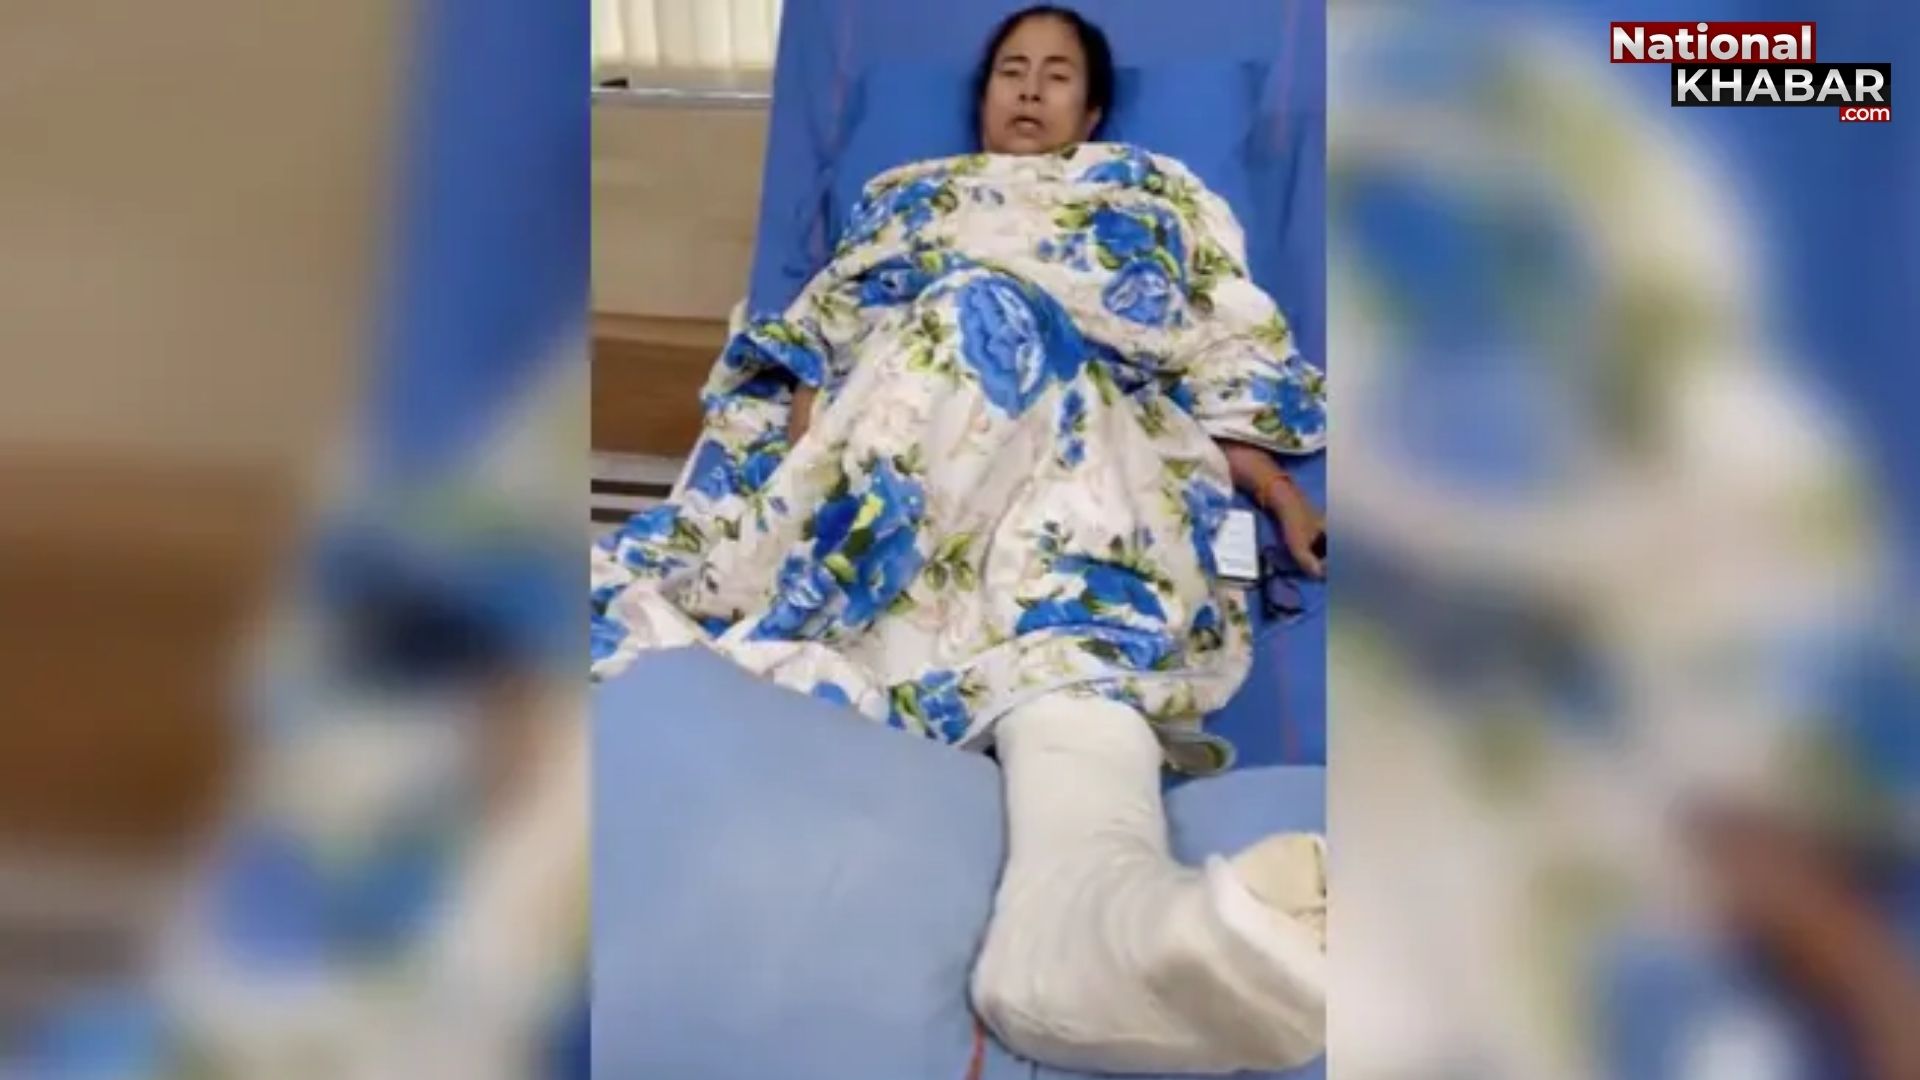 Mamata Banerjee ने अस्पताल से वीडियो जारी कर कार्यकर्ताओं से की अपील, कहा- व्हीलचेयर पर करूंगी चुनाव प्रचार